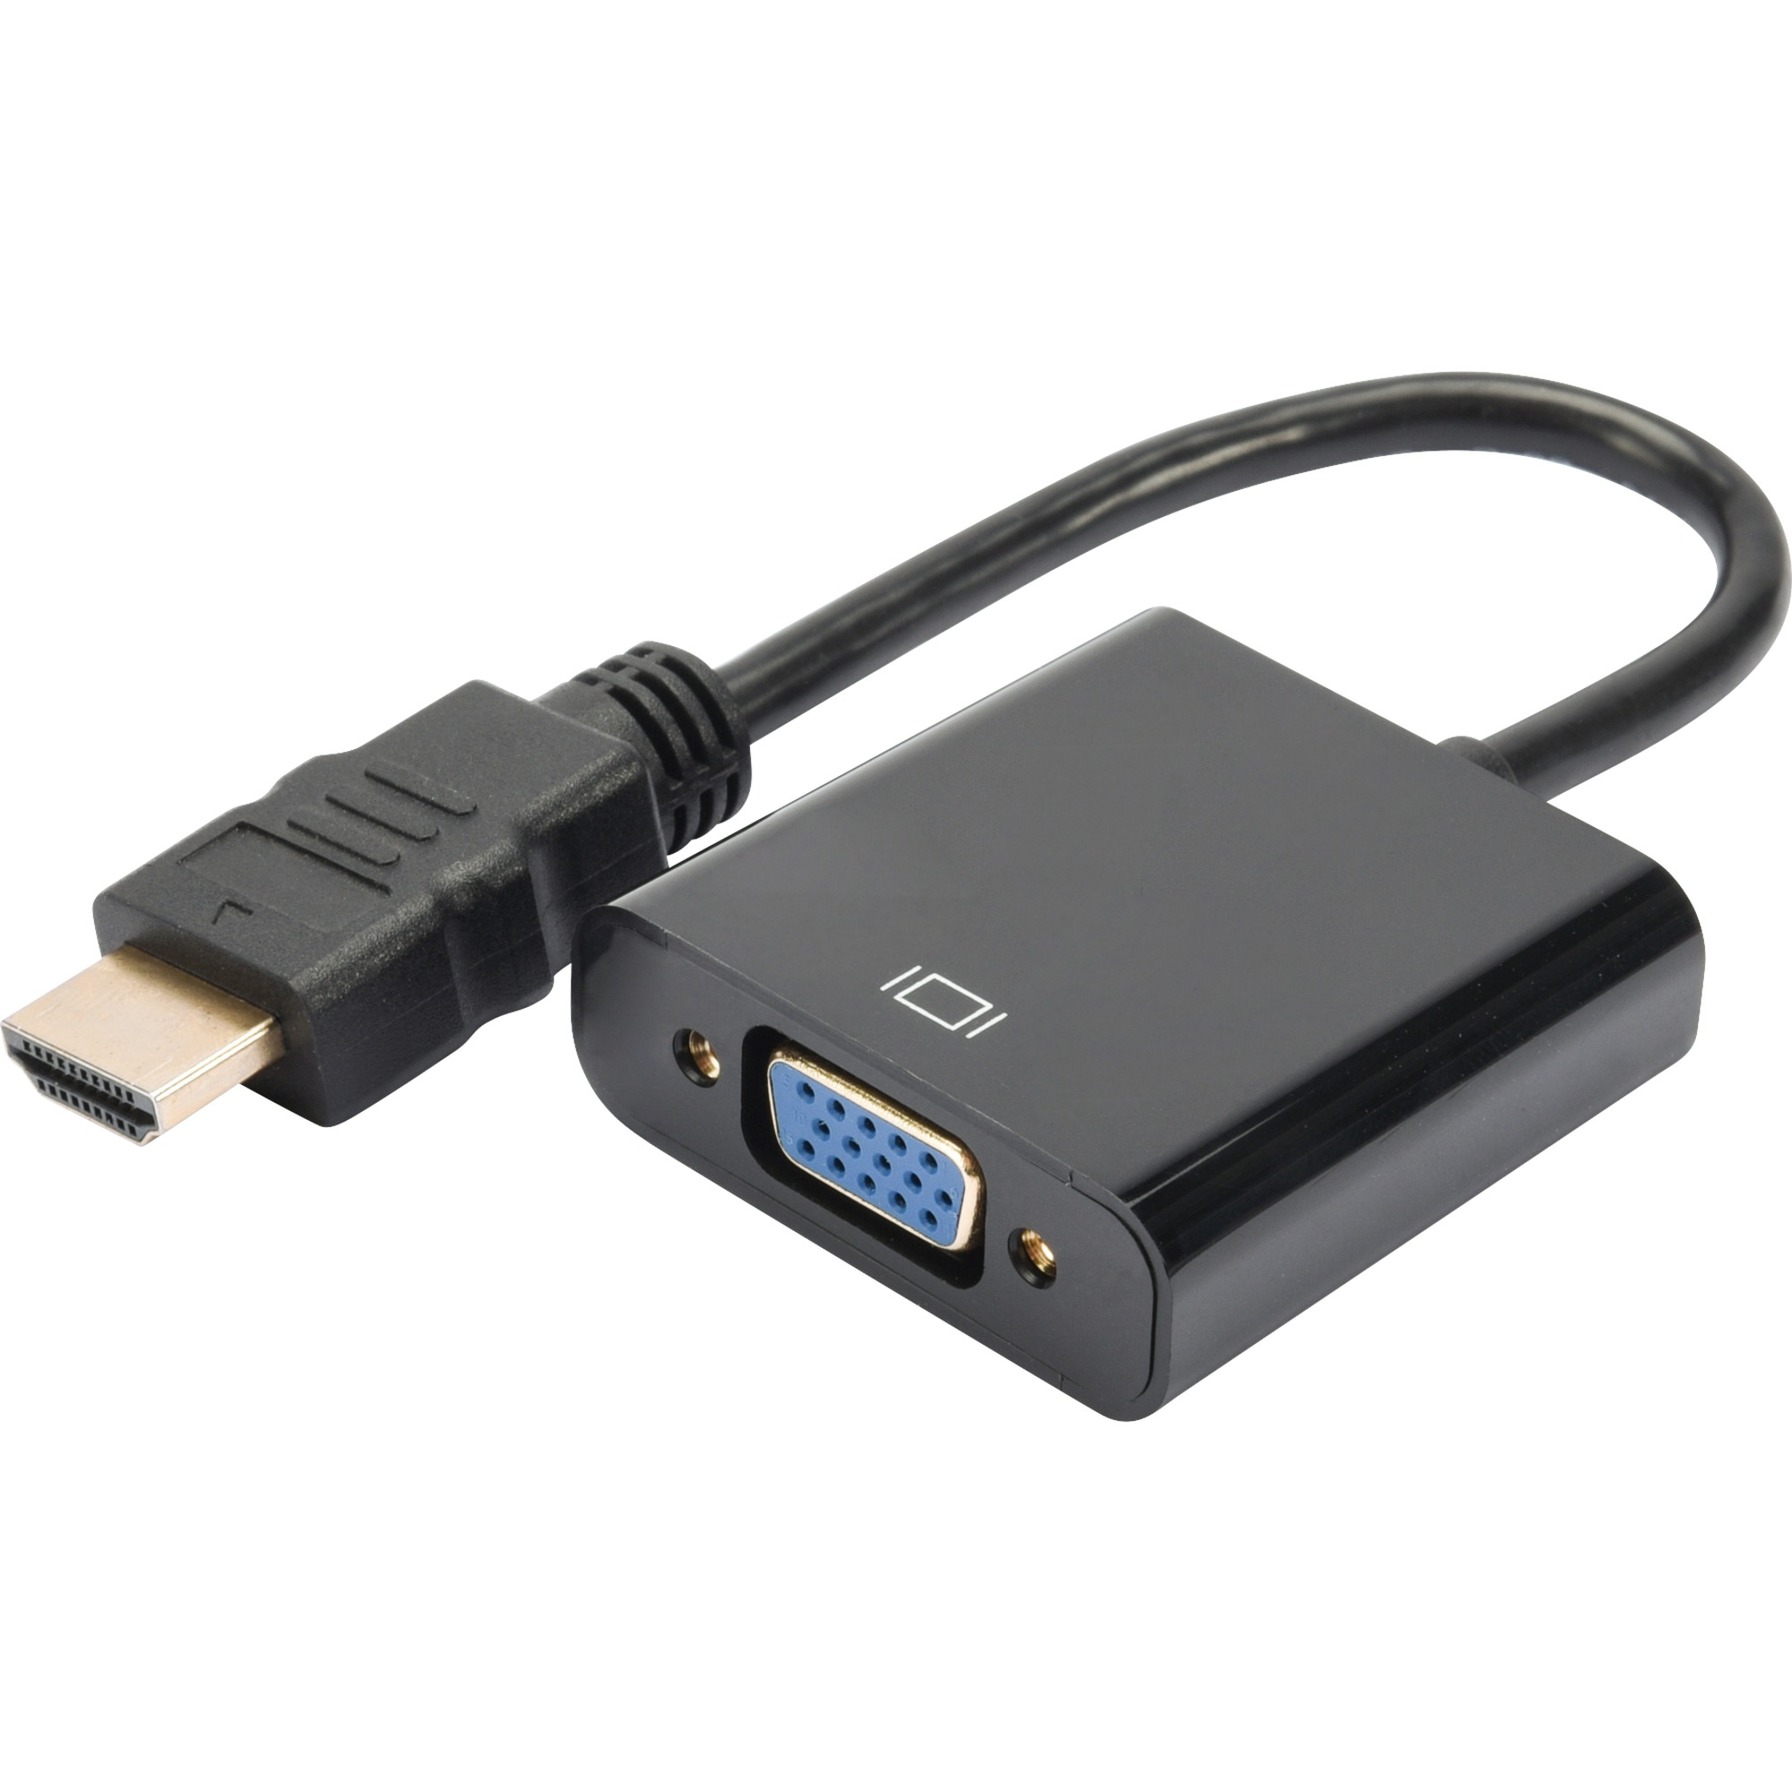 Image of Alternate - Konverter HDMI A > VGA, Adapter online einkaufen bei Alternate